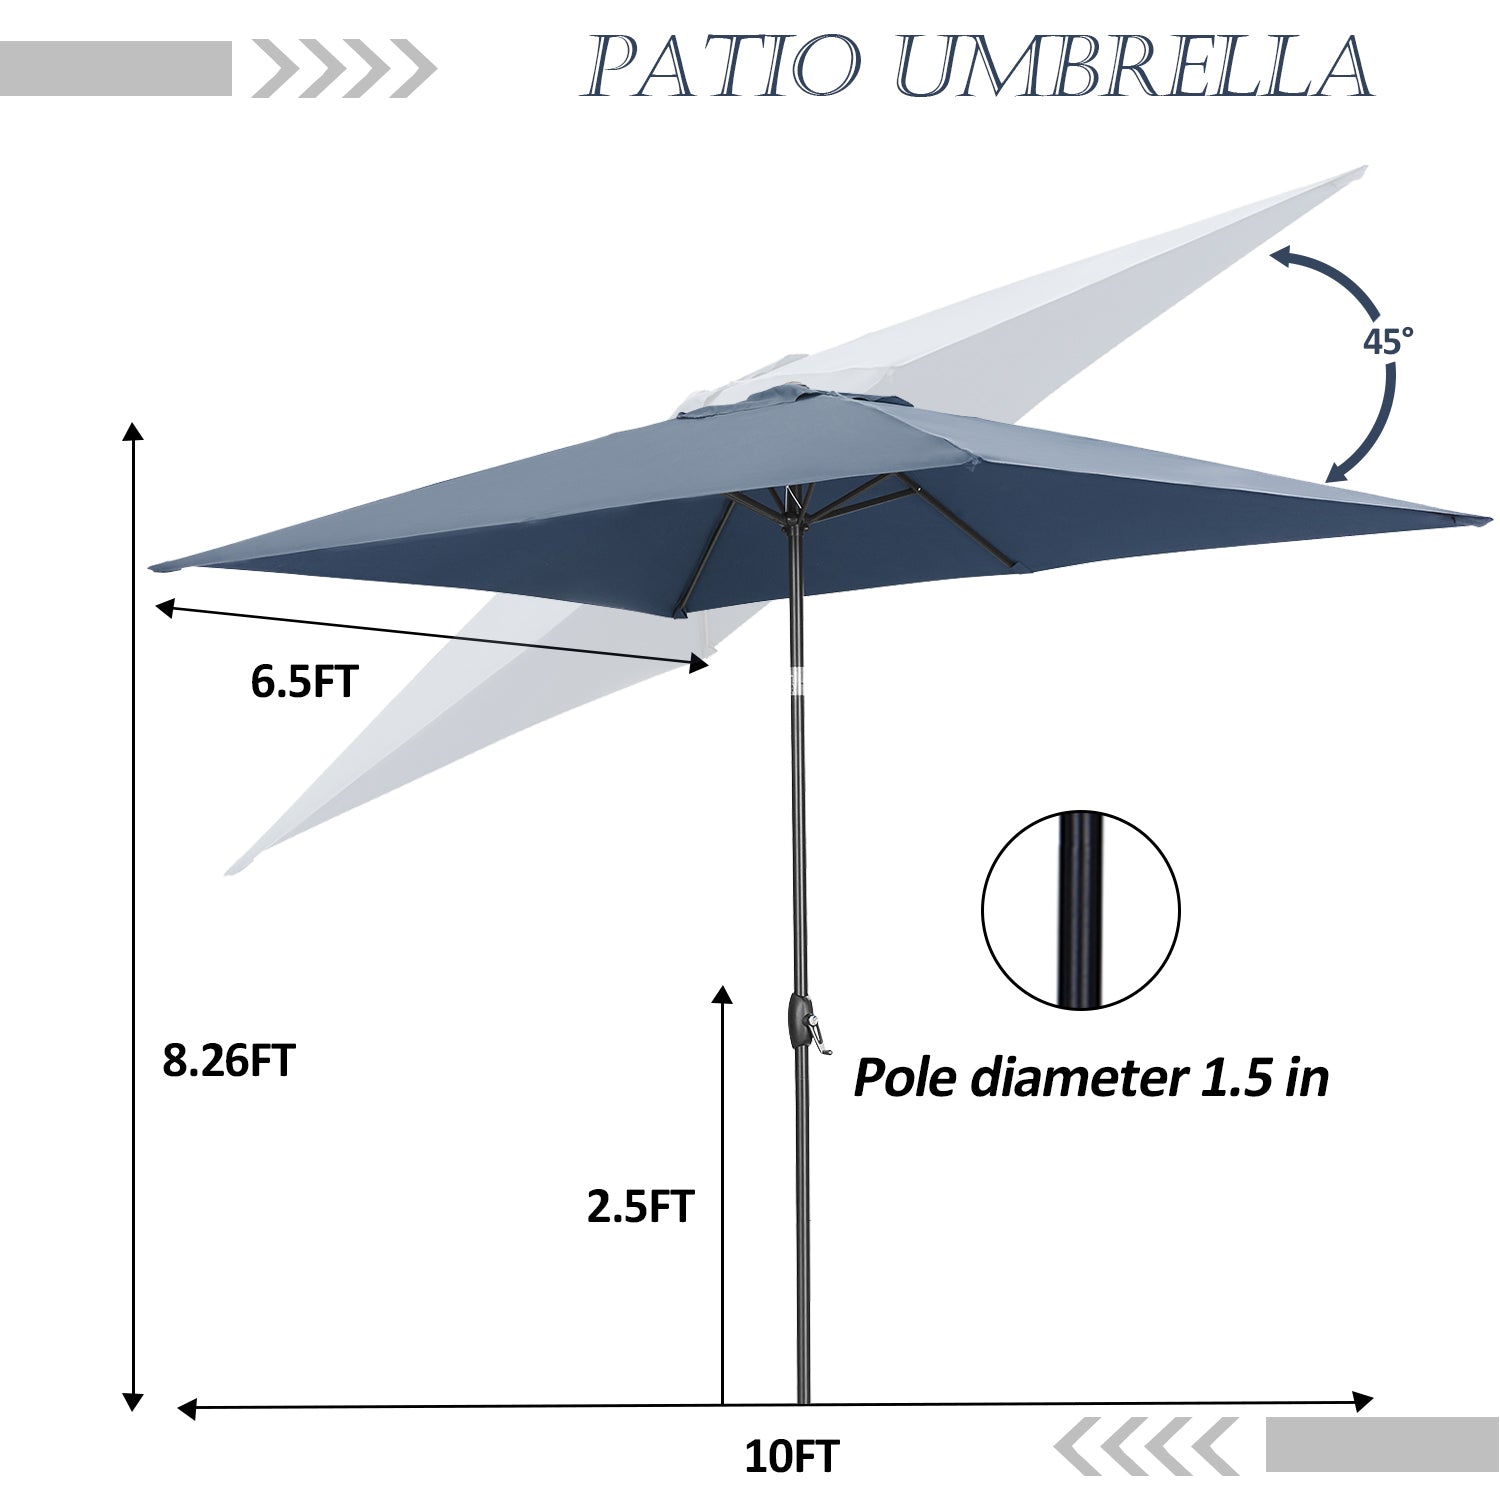 Wesfital 10' Rectangular Patio Lawn Market Umbrella Outdoor Table Umbrellas Market Center Umbrellas with Push Button Tilt for Garden, Lawn & Pool,Navy Blue